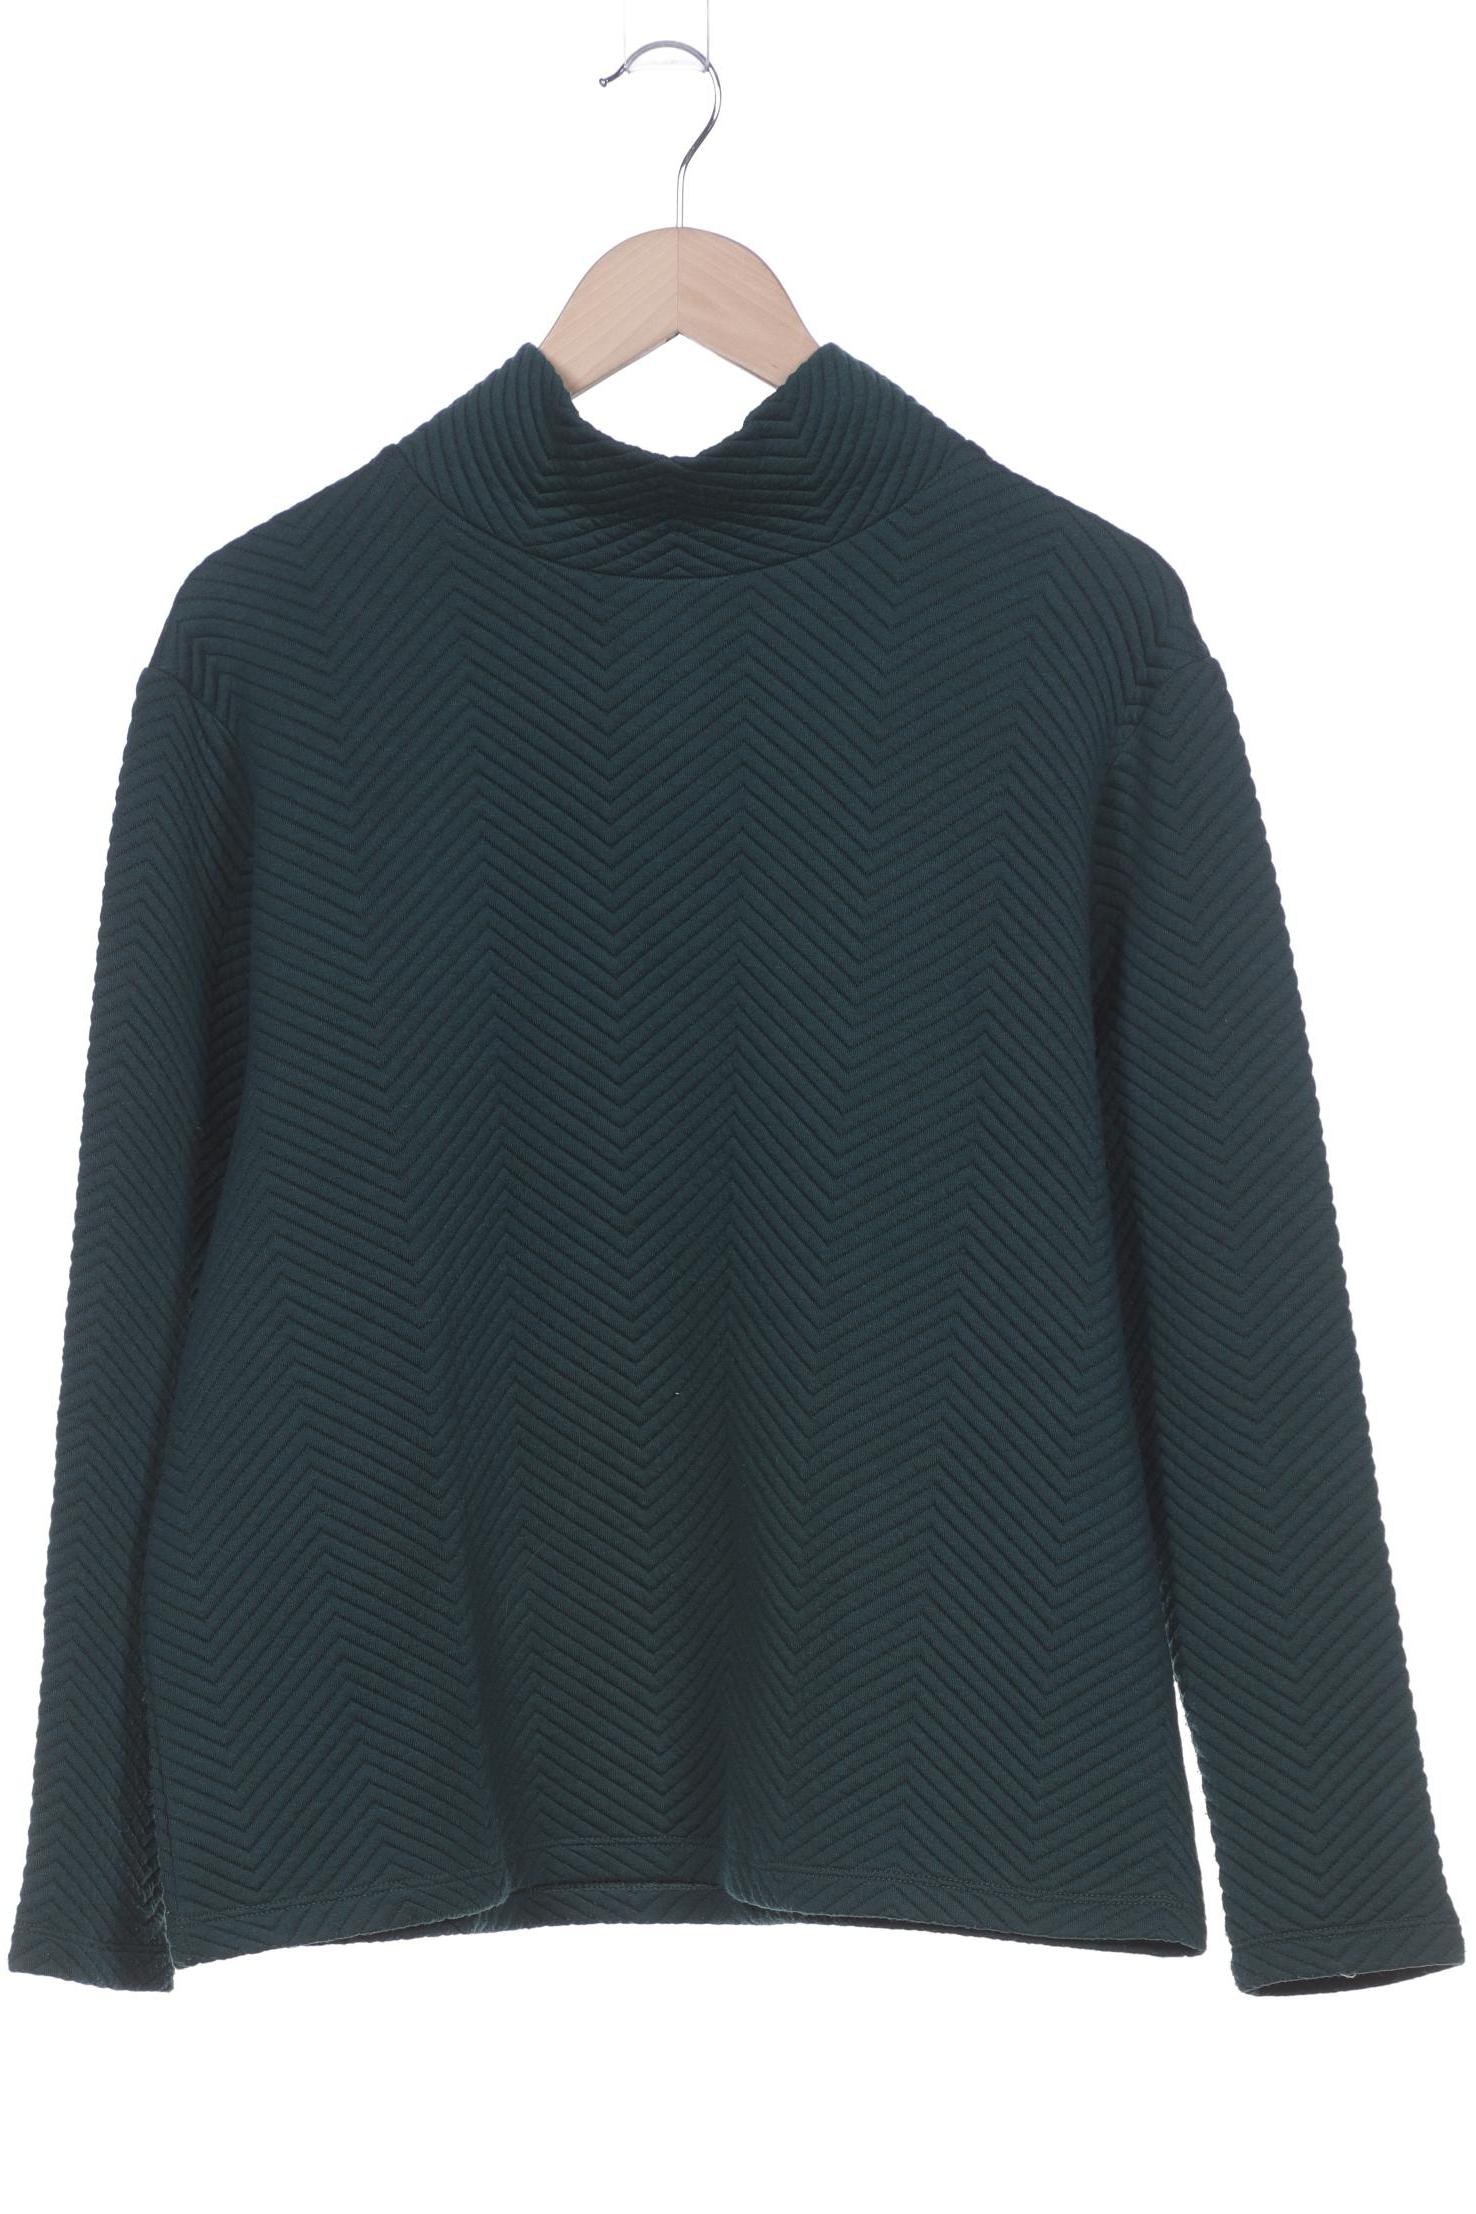 O Neill Damen Sweatshirt, grün, Gr. 42 von O Neill